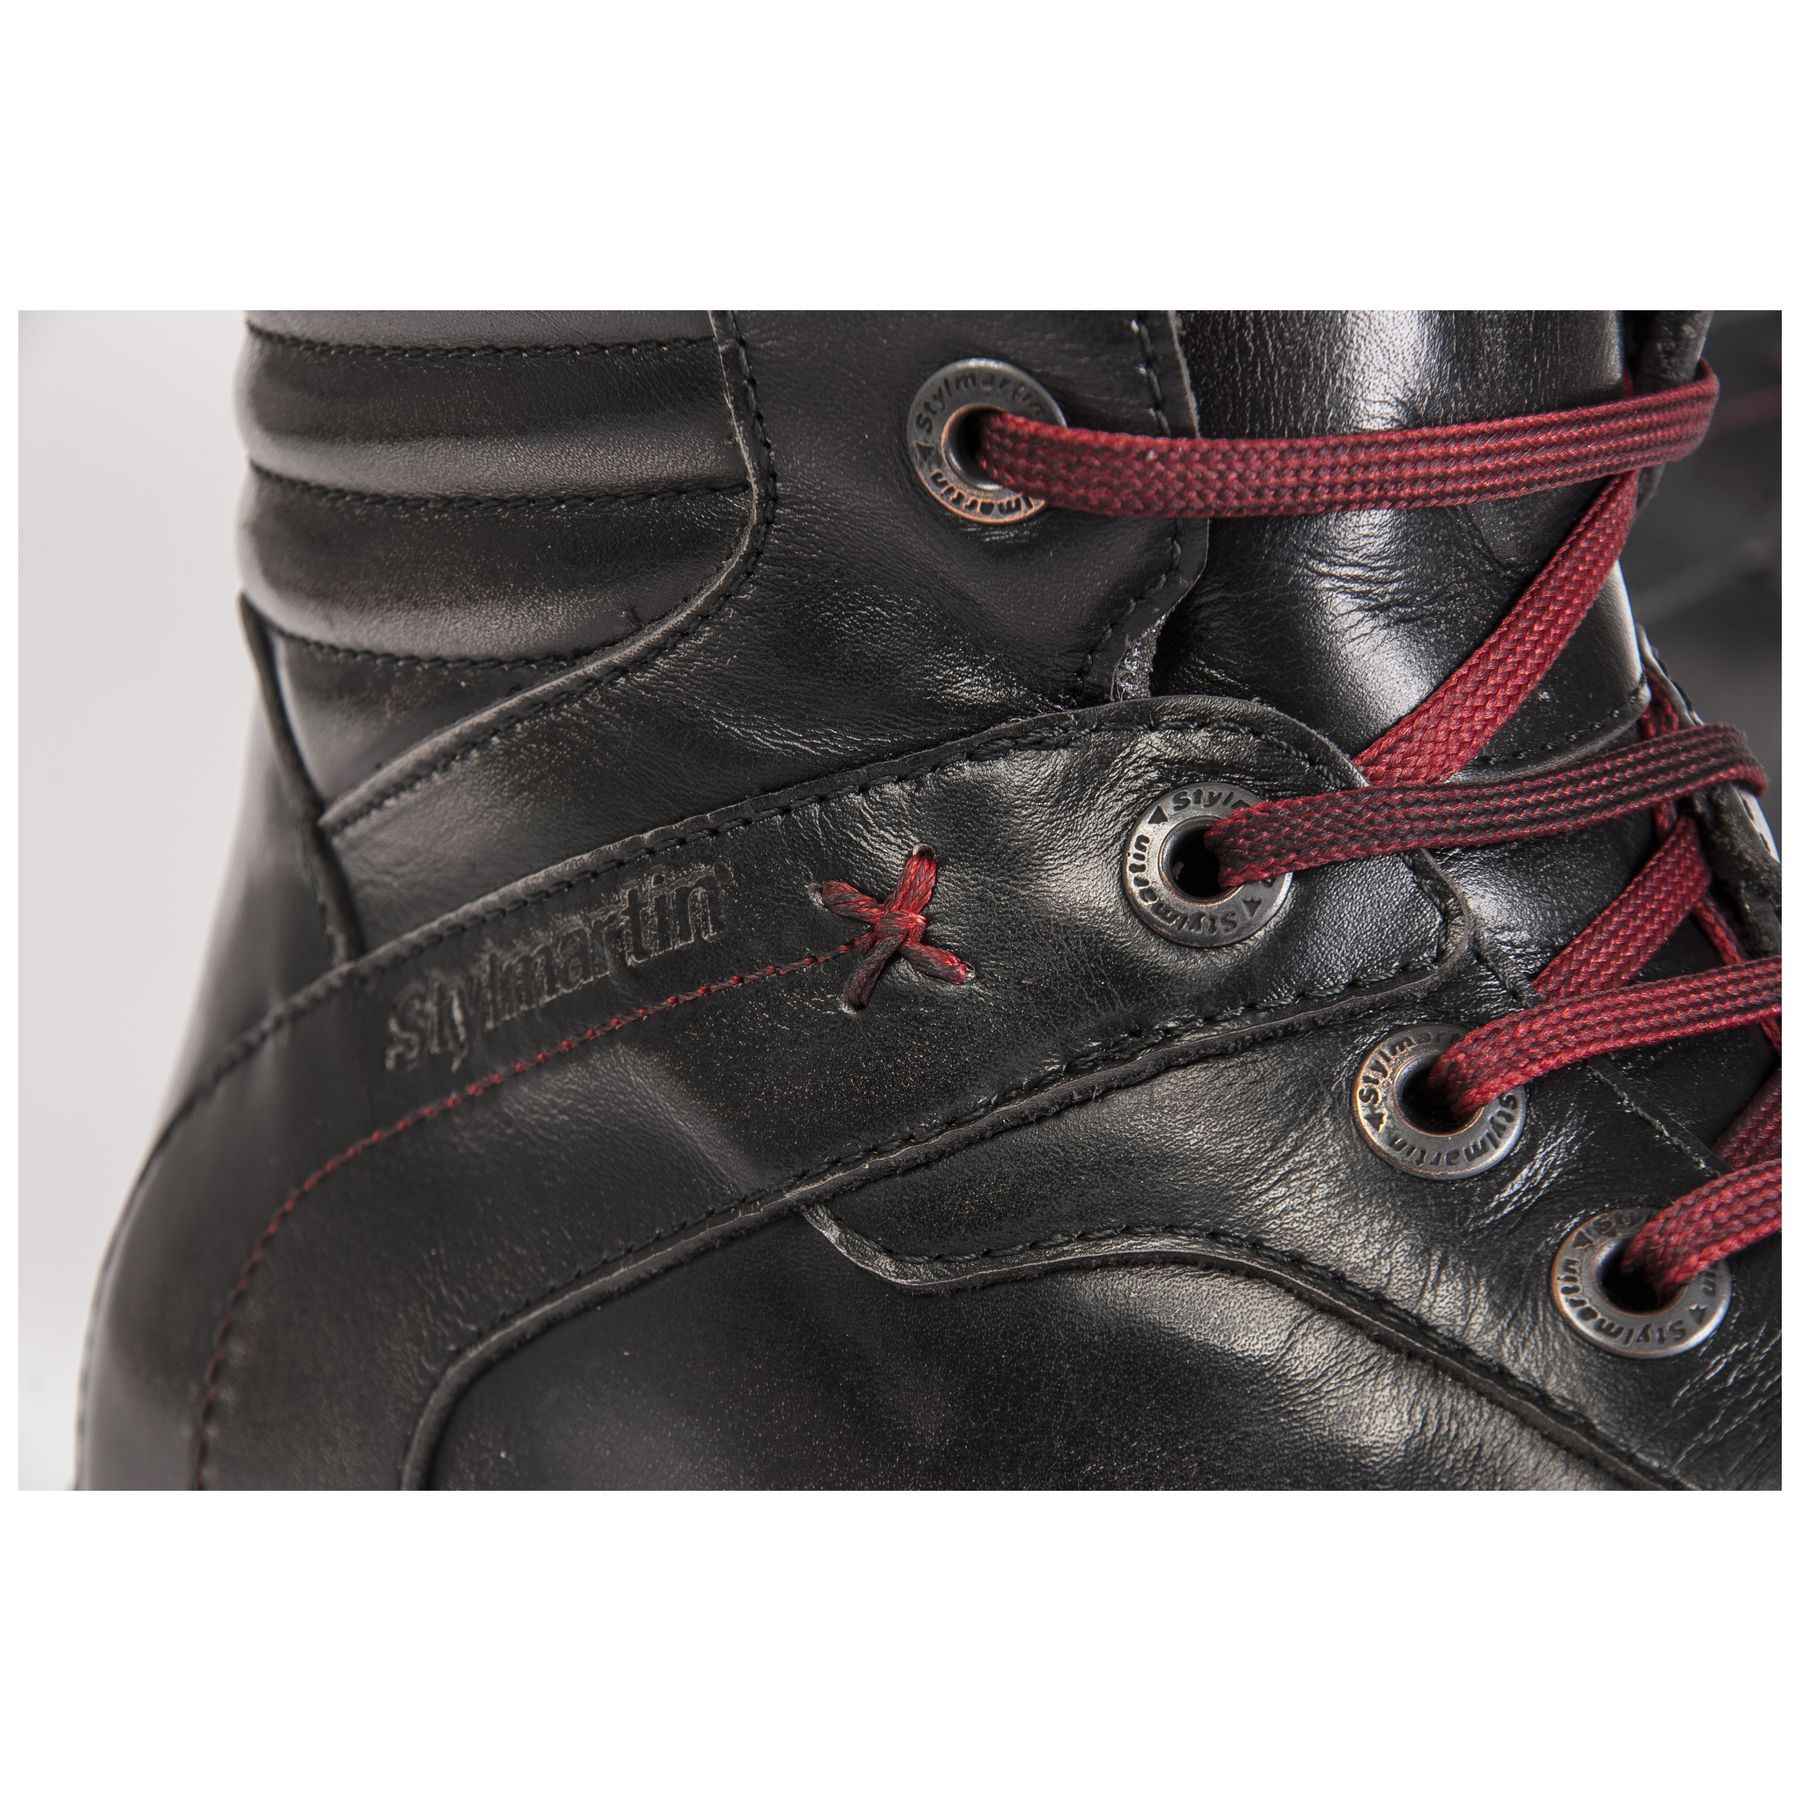 Stylmartin Iron WP Boots - Black